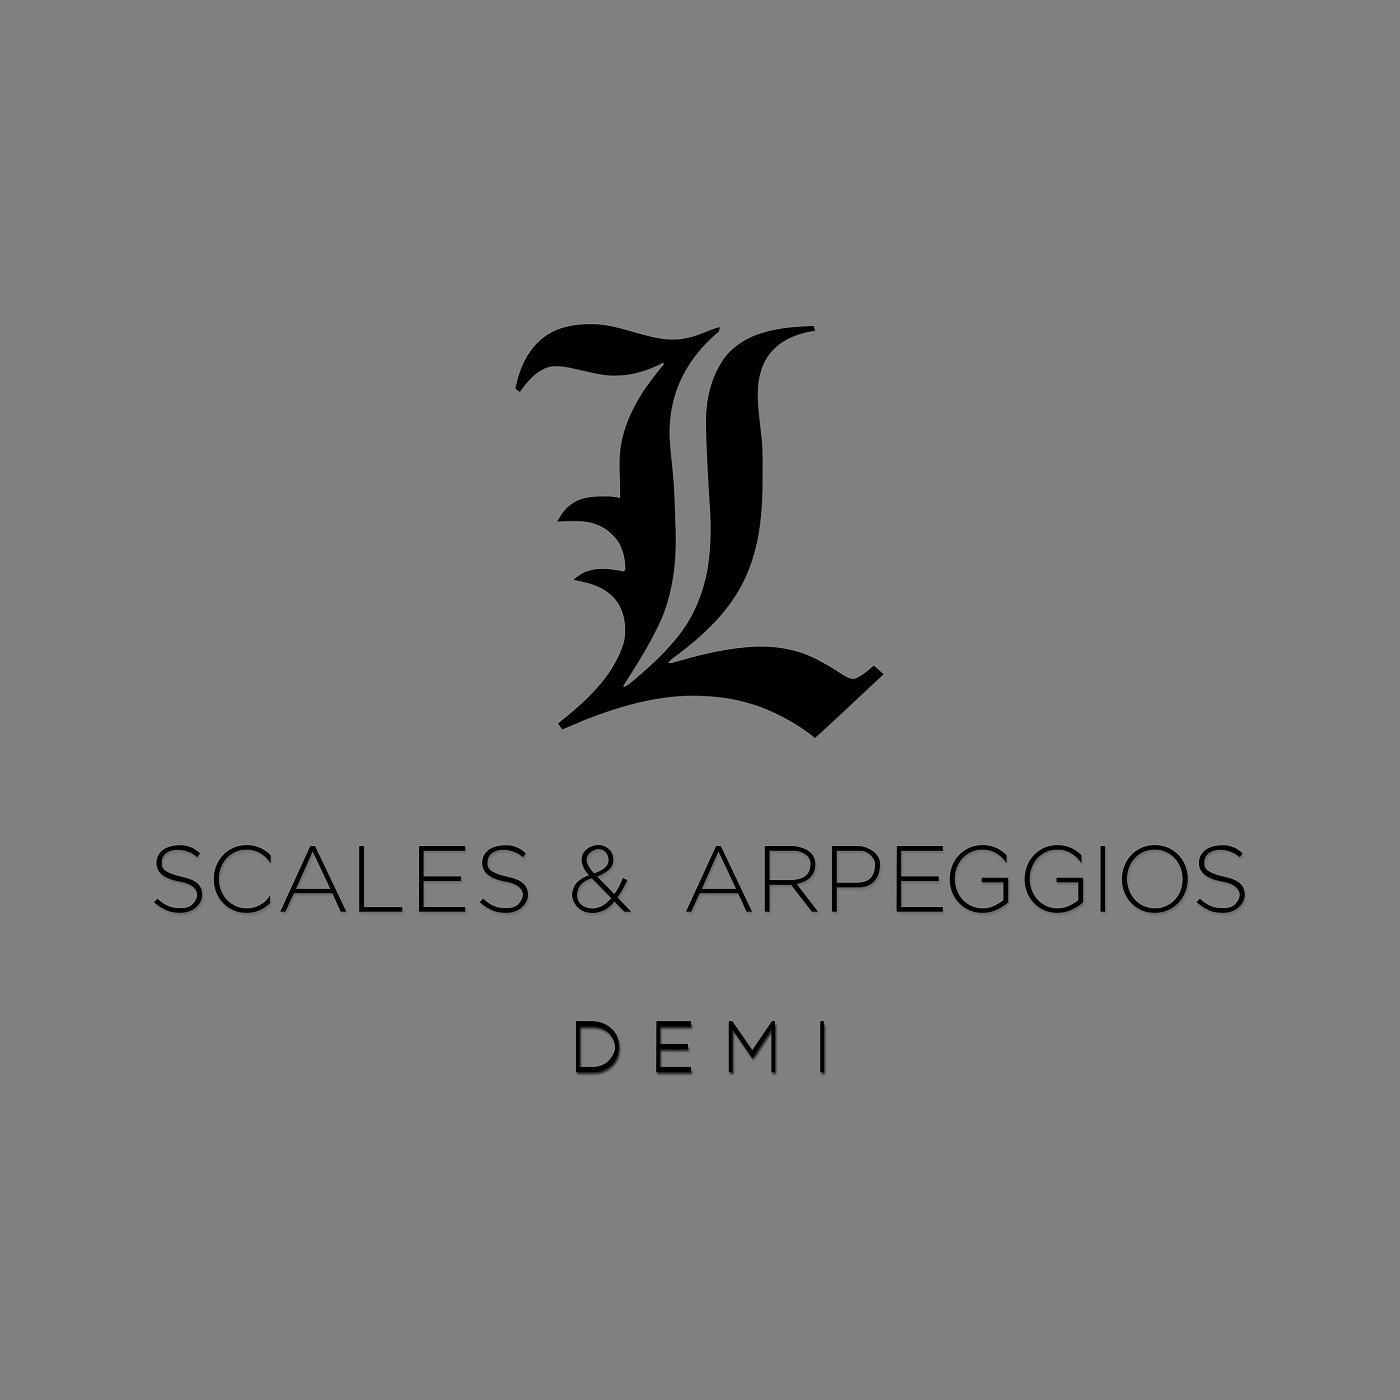 Scales & Arpeggios - Demi - Major Scales